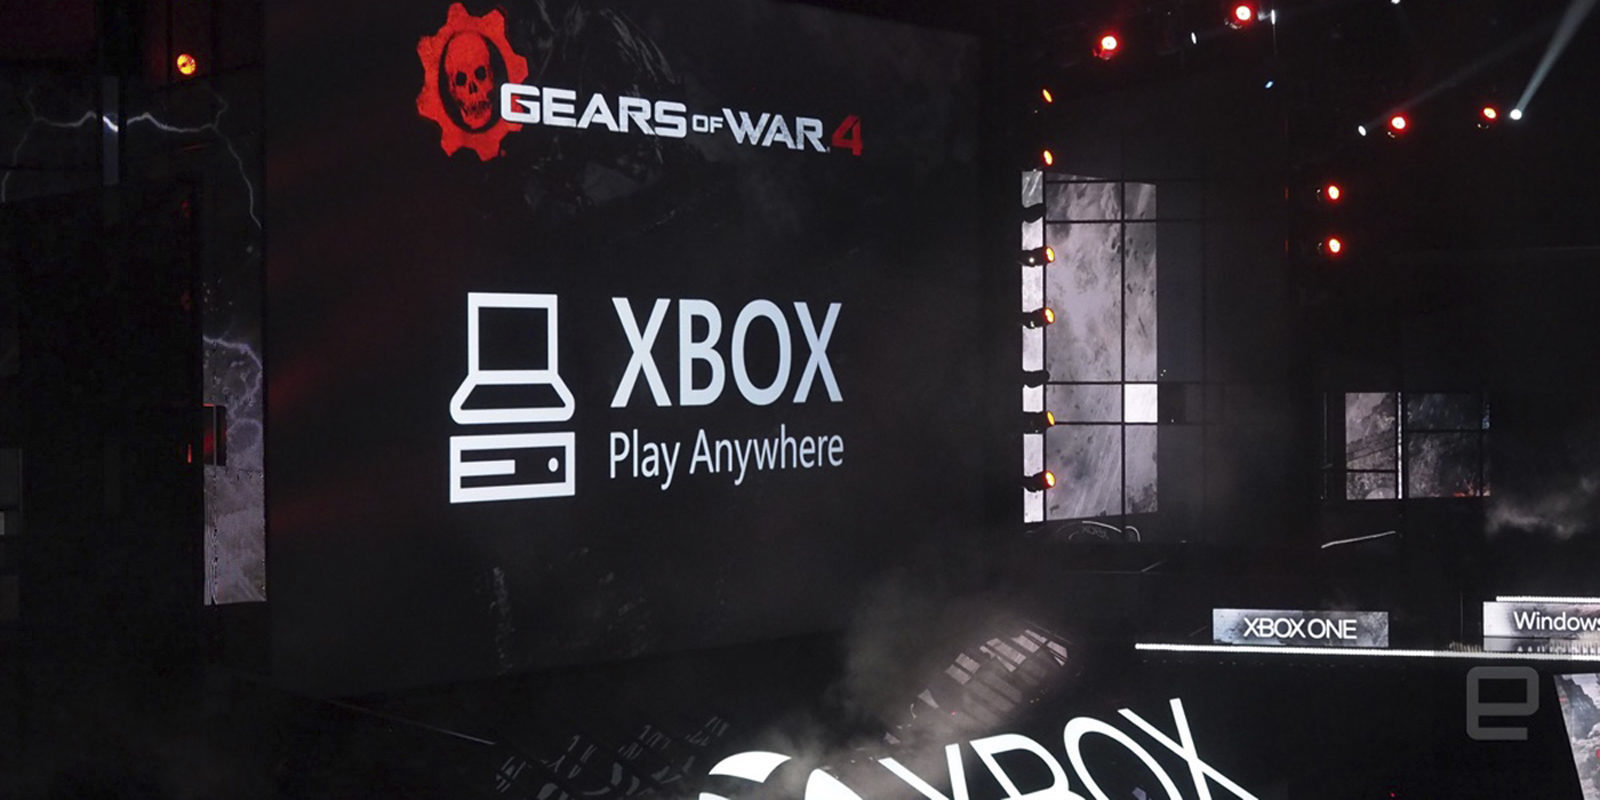 E3 2016: El "Play Anywhere" de Xbox no incluye necesariamente la opción de Cross Play, 'Halo Wars 2' el primer ejemplo